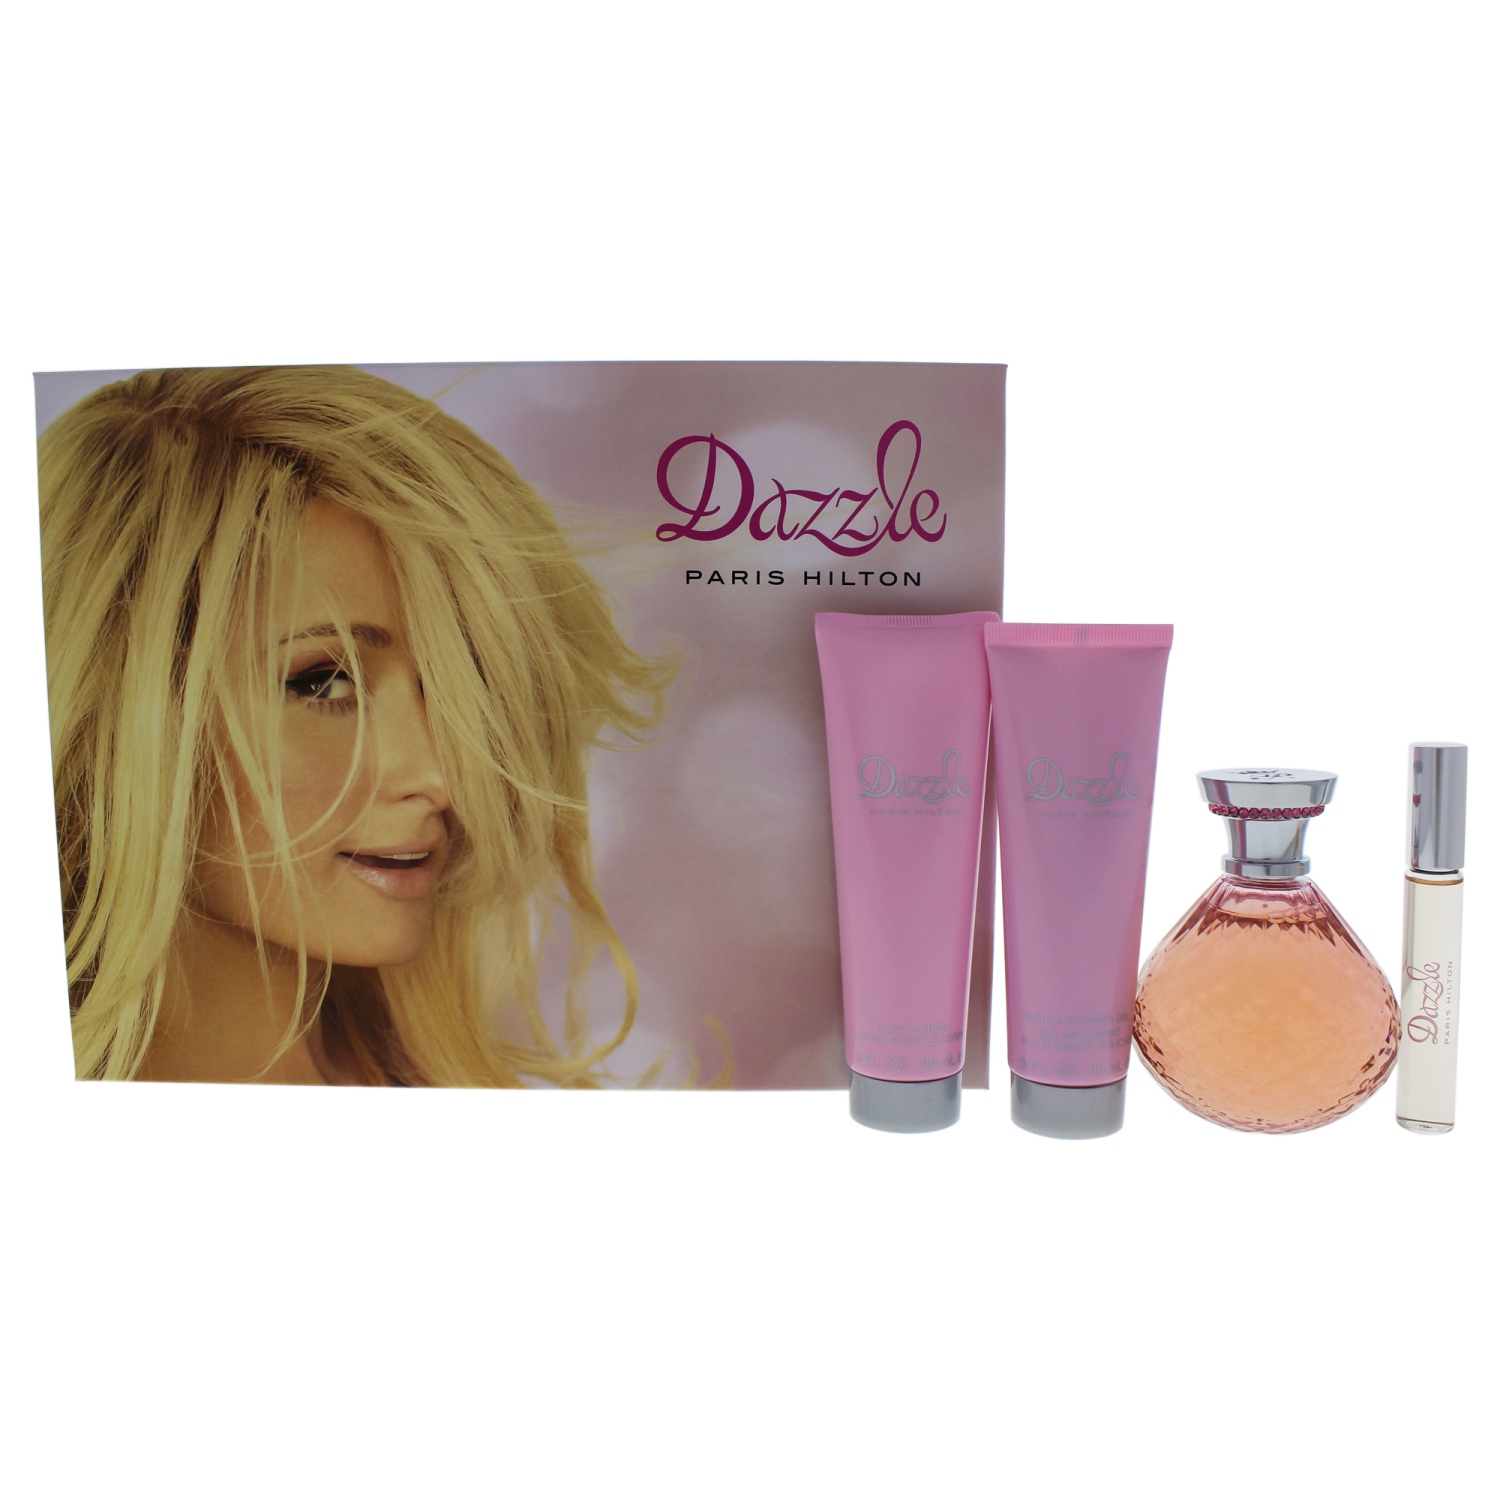 Dazzle by Paris Hilton for Women - 4 Pc Gift Set 4.2oz EDP Spray, 0.34oz EDP Rollerball, 3oz Body Lo